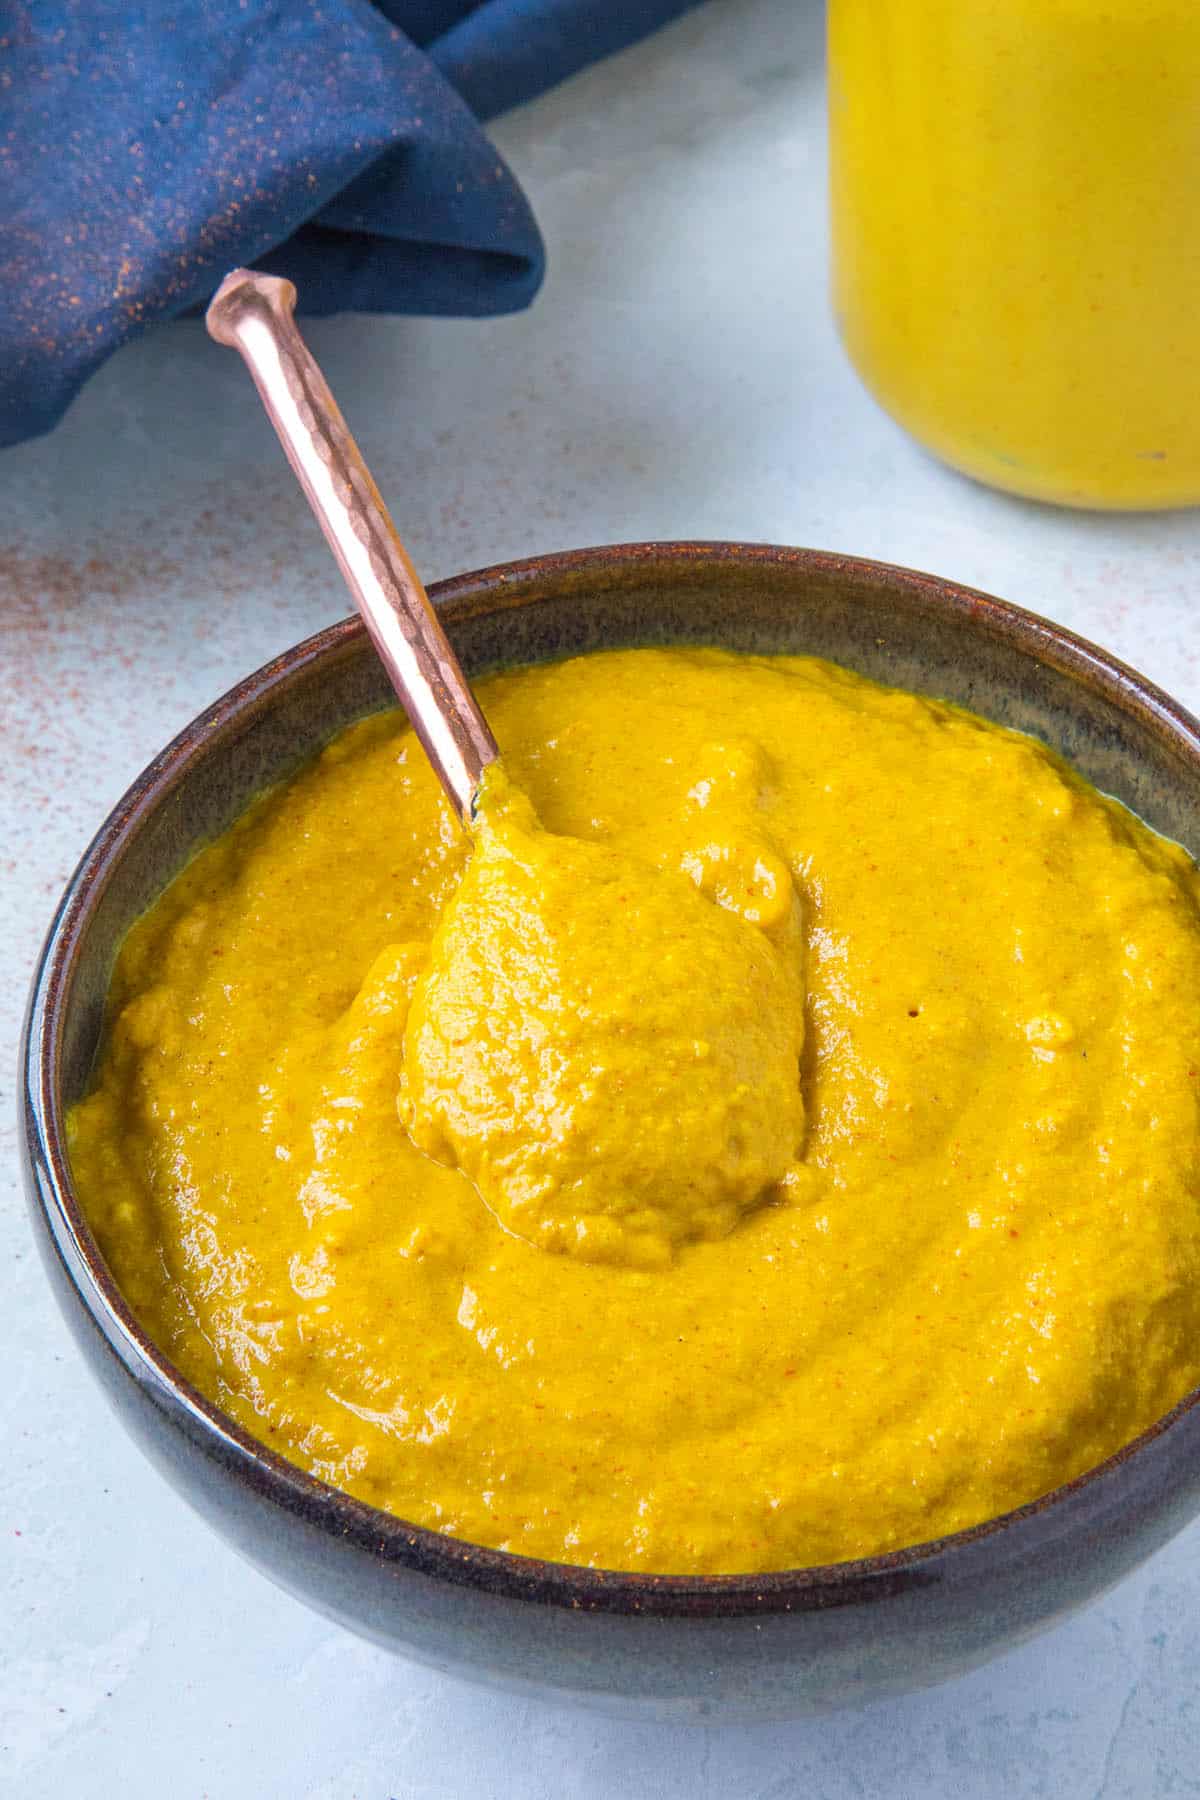 Homemade Yellow Mustard Recipe